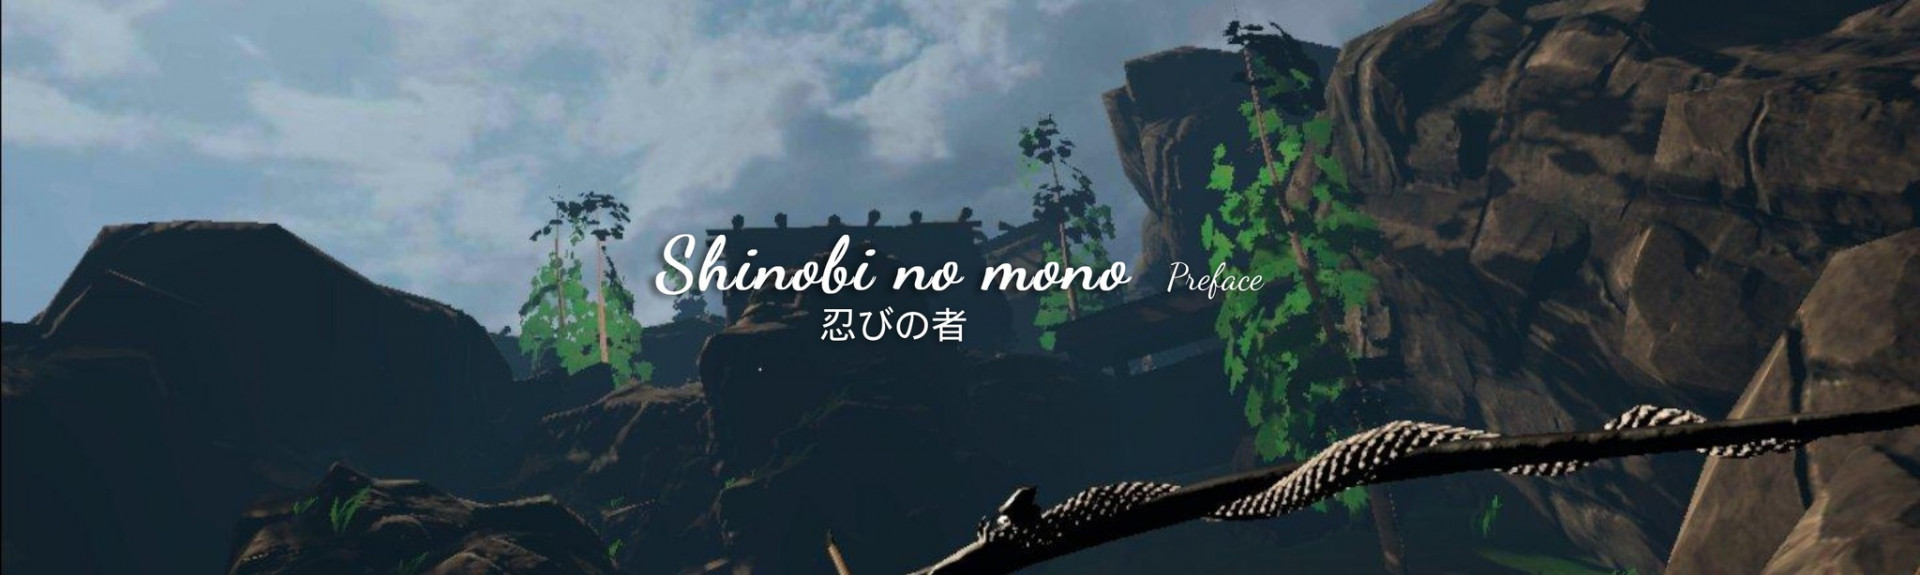 Shinobi no mono - Preface